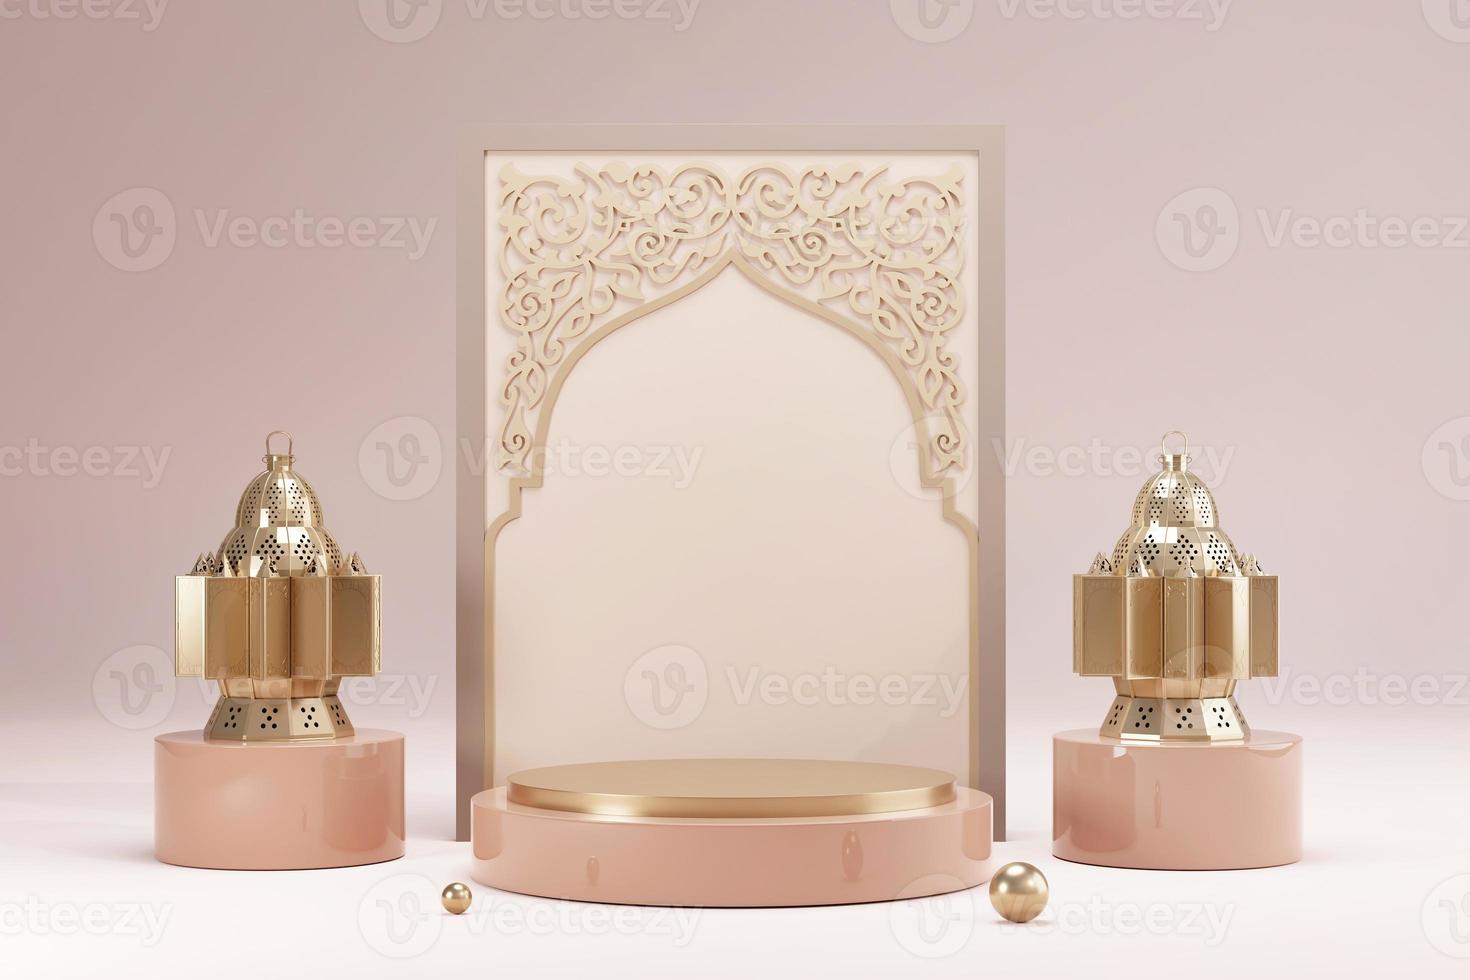 fondo de saludo islámico ramadan kareem con luna y linterna doradas 3d realistas. tarjeta de felicitación de diseño creativo, pancarta, póster. fiesta sagrada islámica tradicional, representación 3d foto